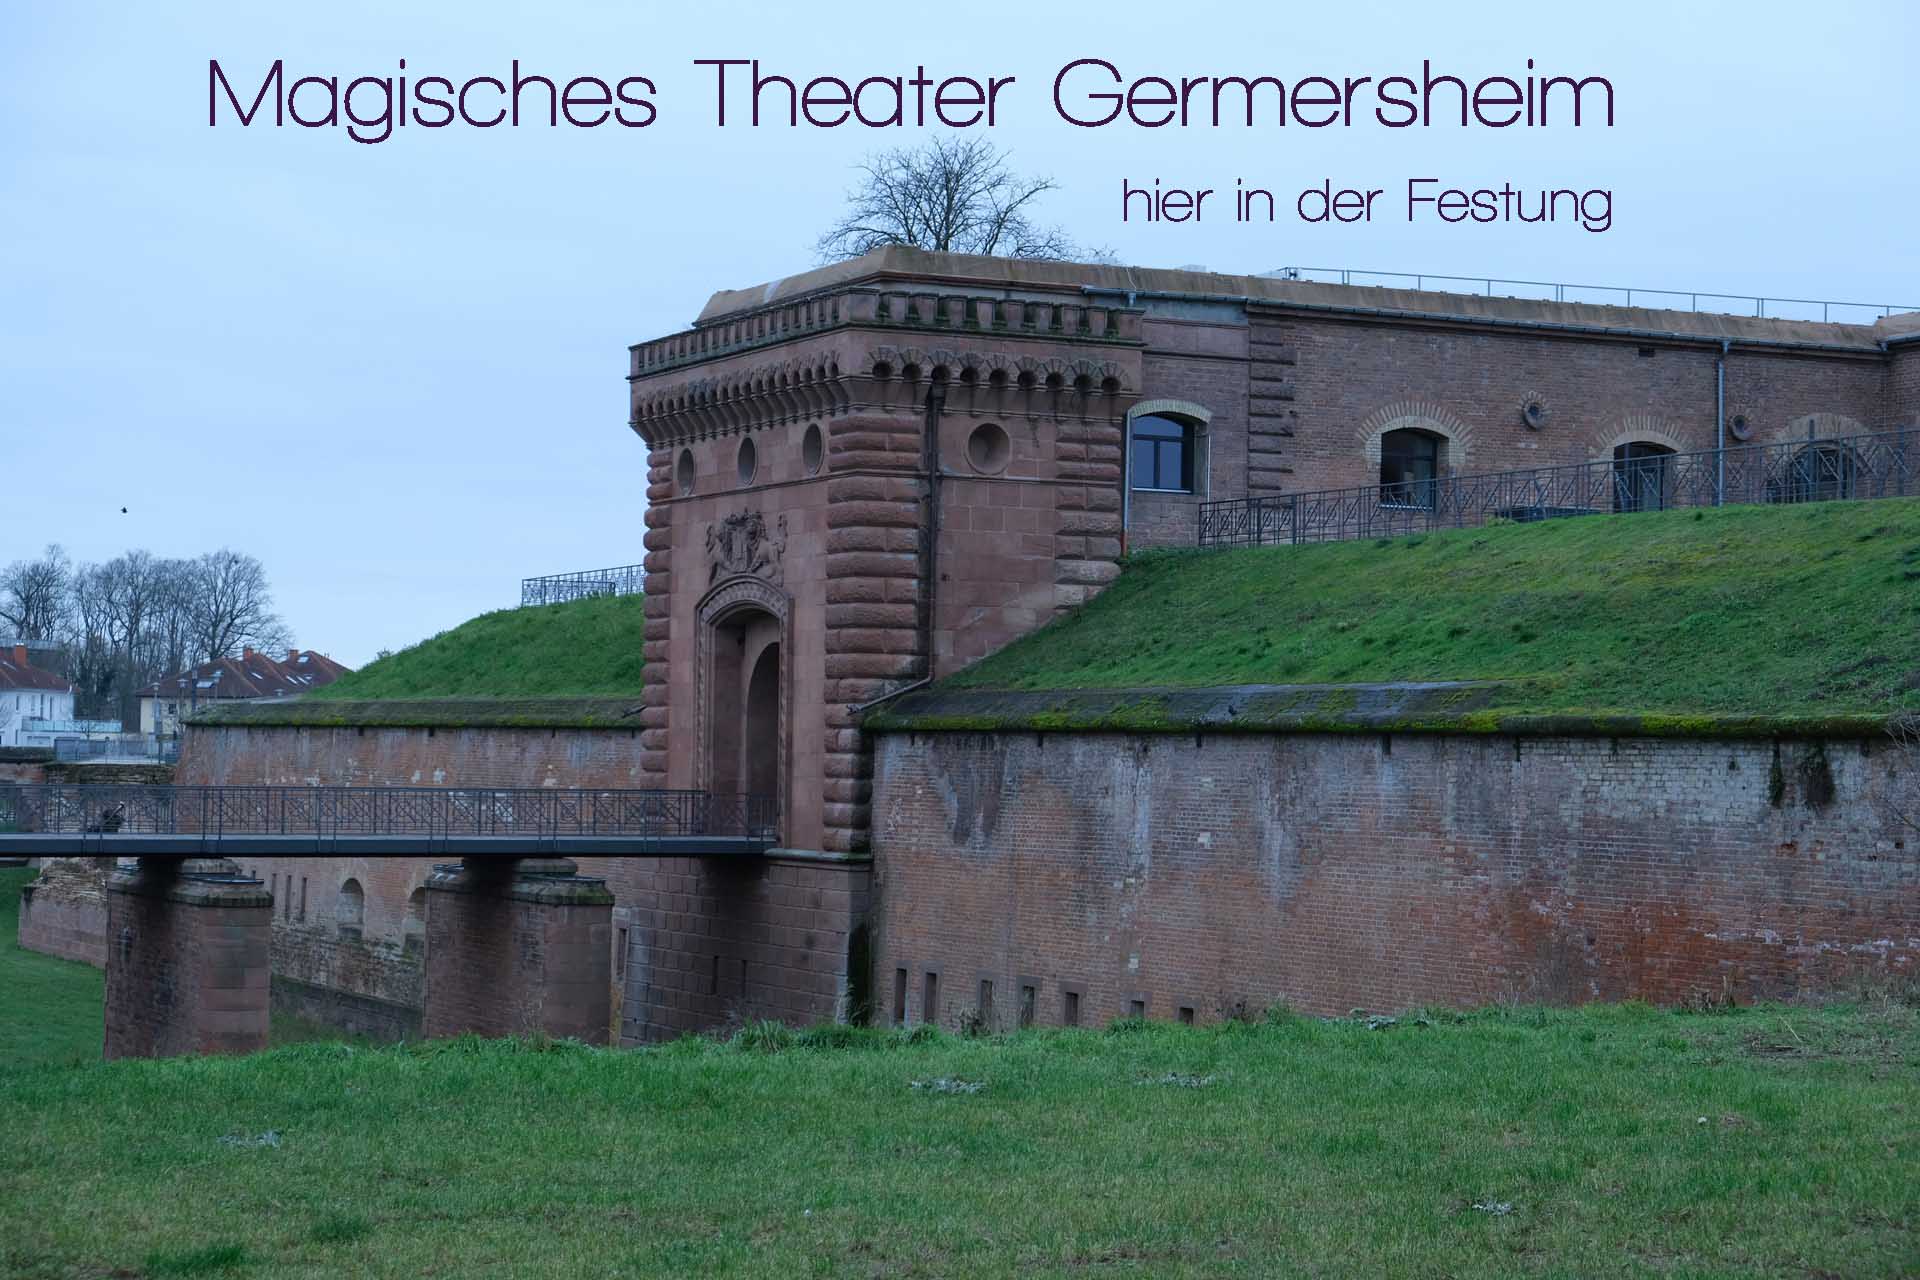 Das Magische Theater in Germersheim